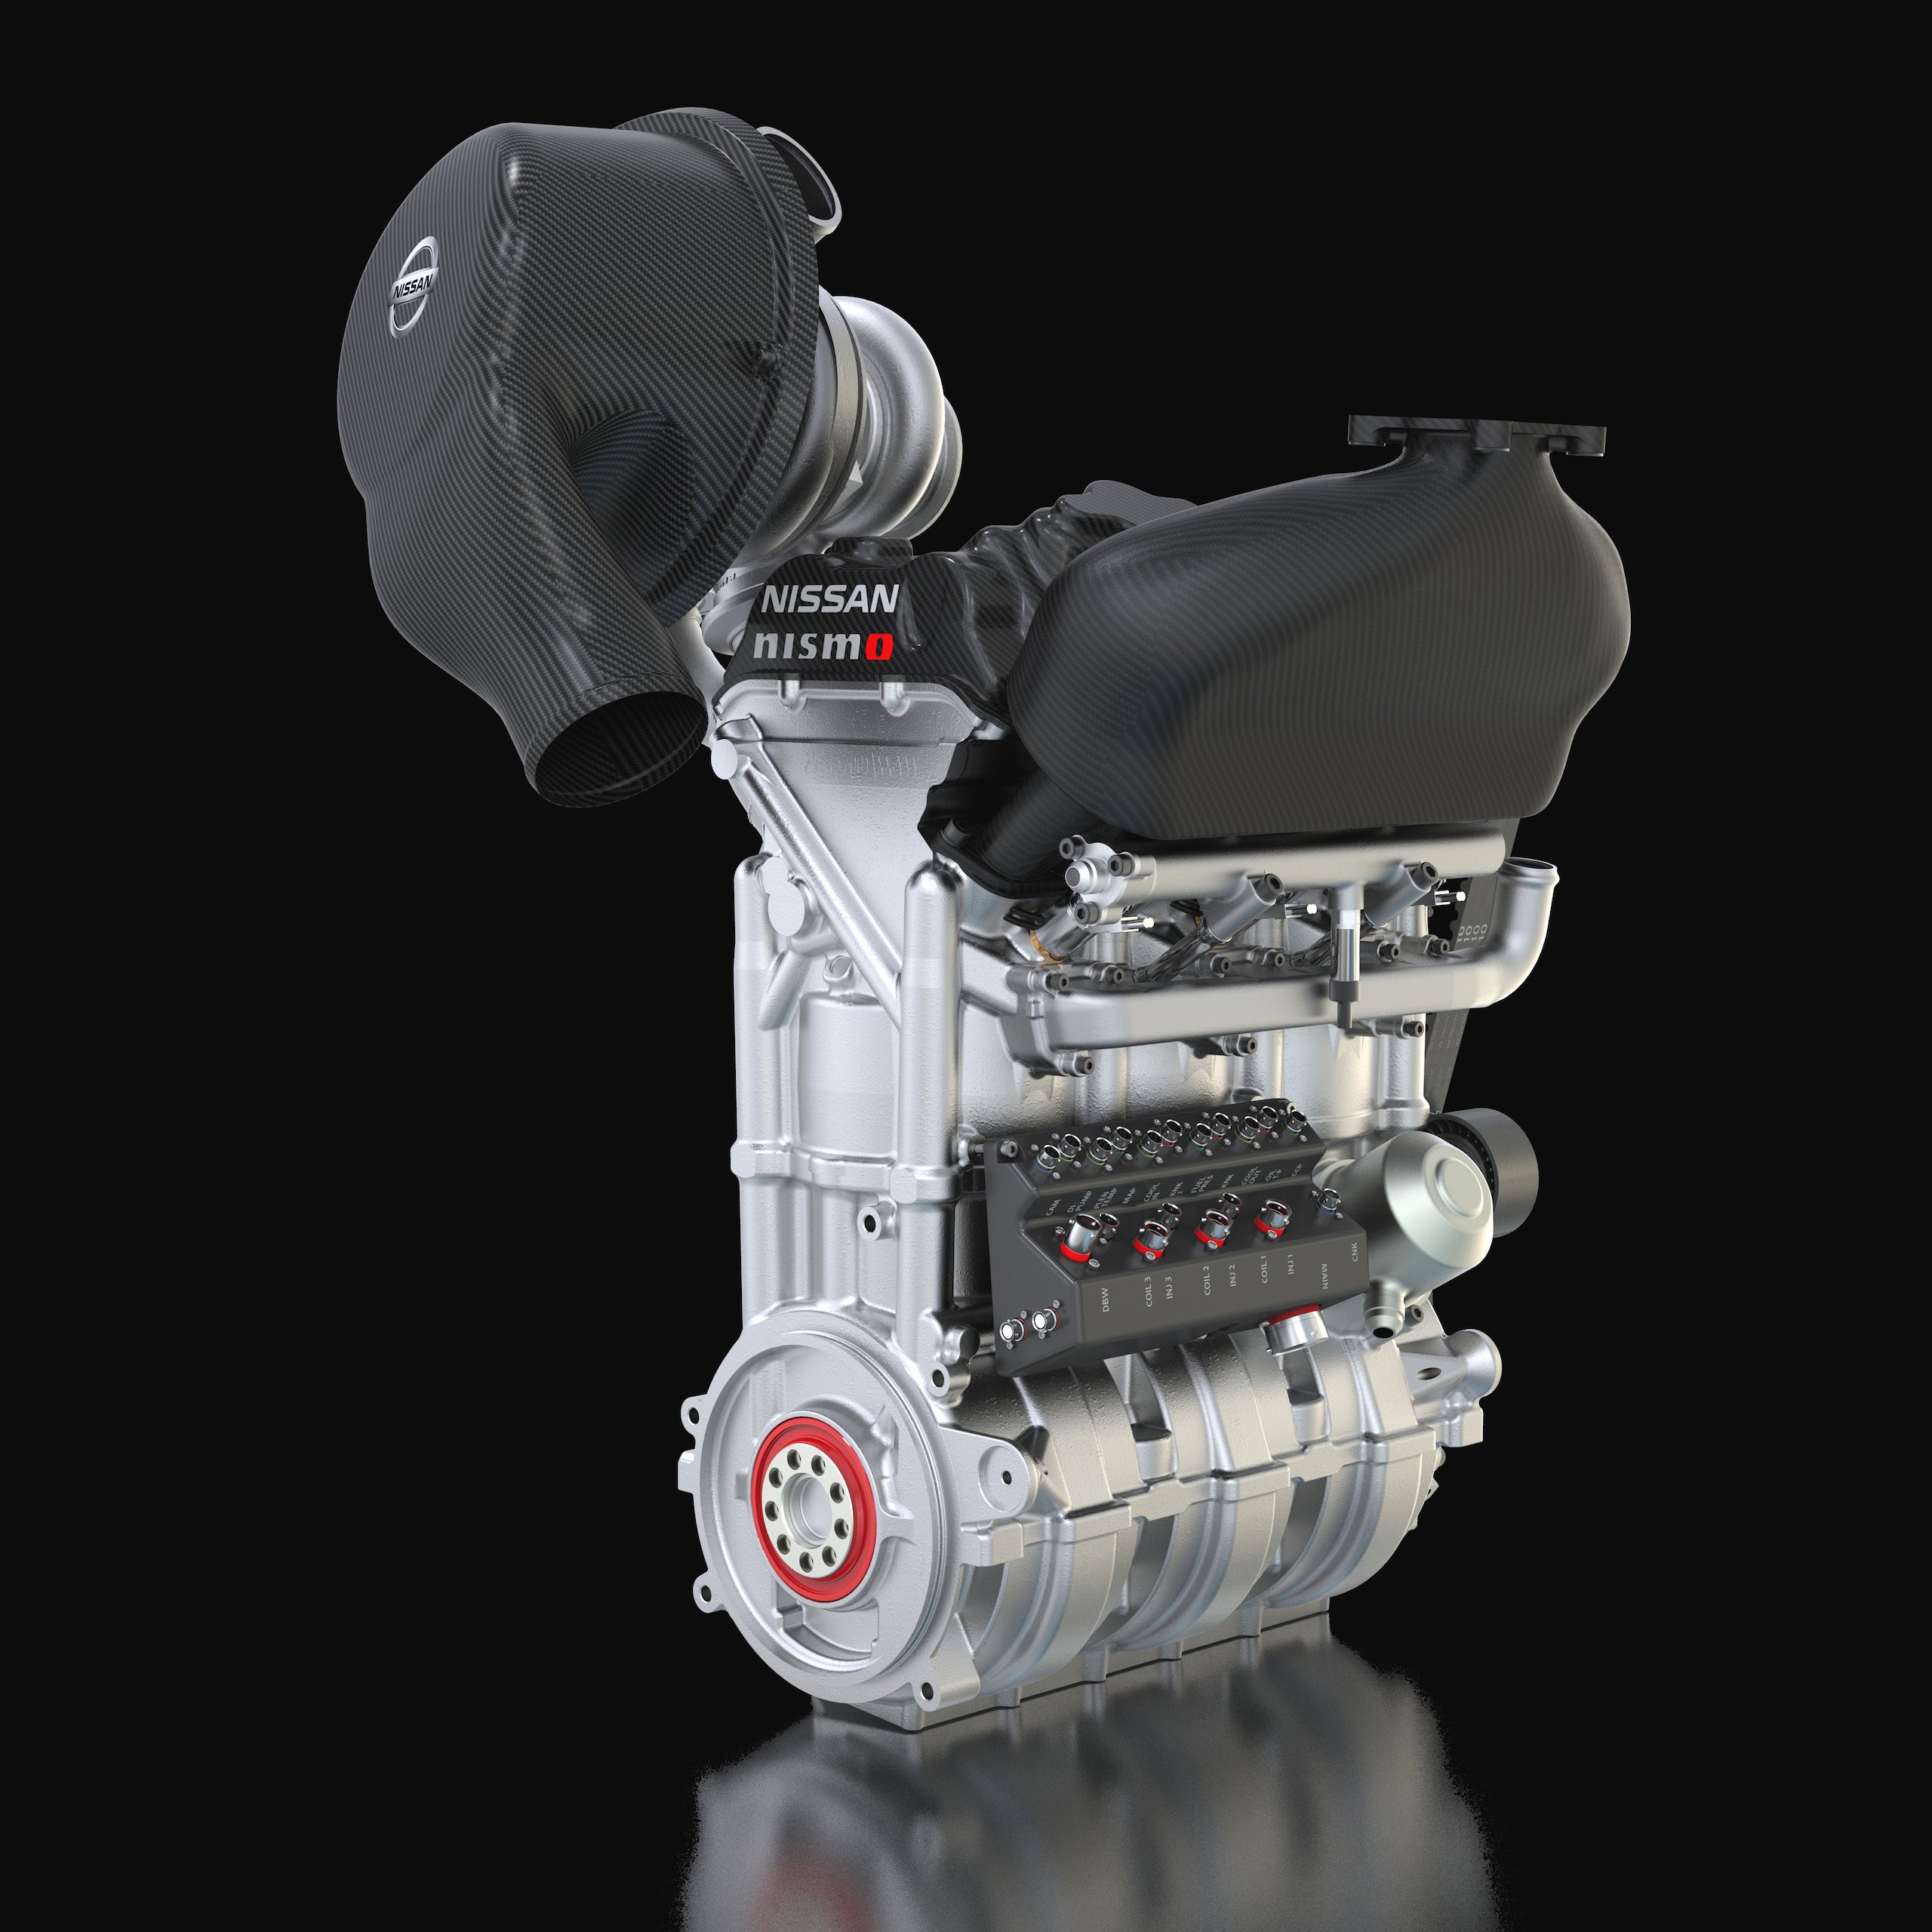 Двигатель новое топливо. Nissan 1.1 Motor. 4х цилиндровый турбо мотор Ниссан. Dig-tr 1.5 Nissan. Трехцилиндровый ДВС Ниссан.